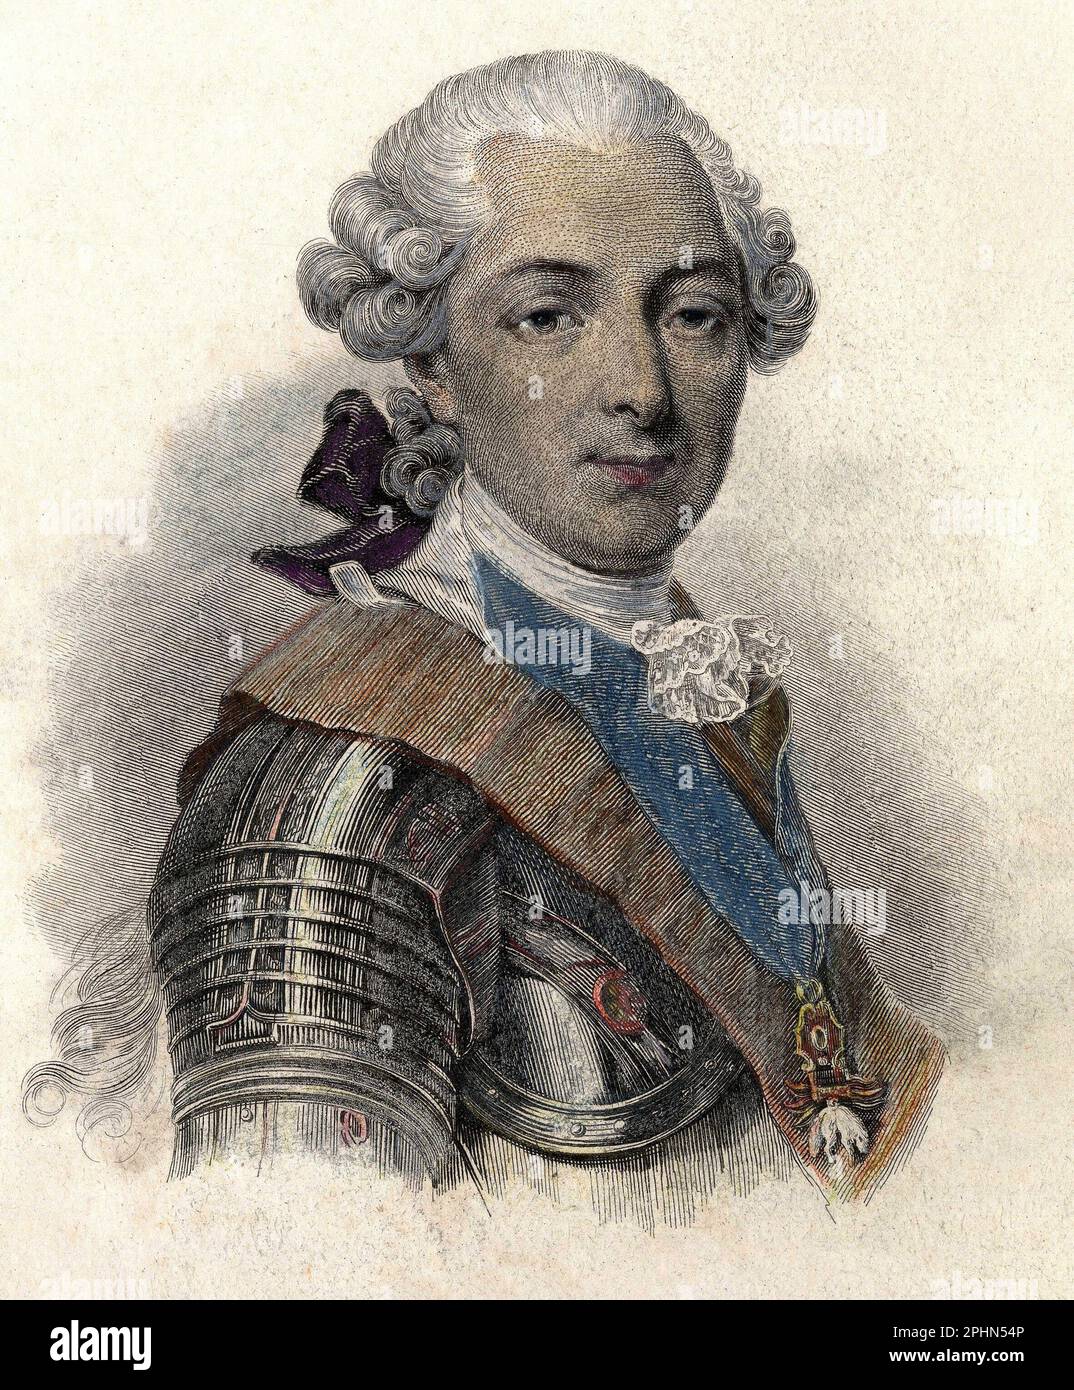 Portrait de Louis Jean Marie de Bourbon, duc de Penthievre (1725-1793), Grand amiral et mecene francais.Gravure vers 1835 Stockfoto